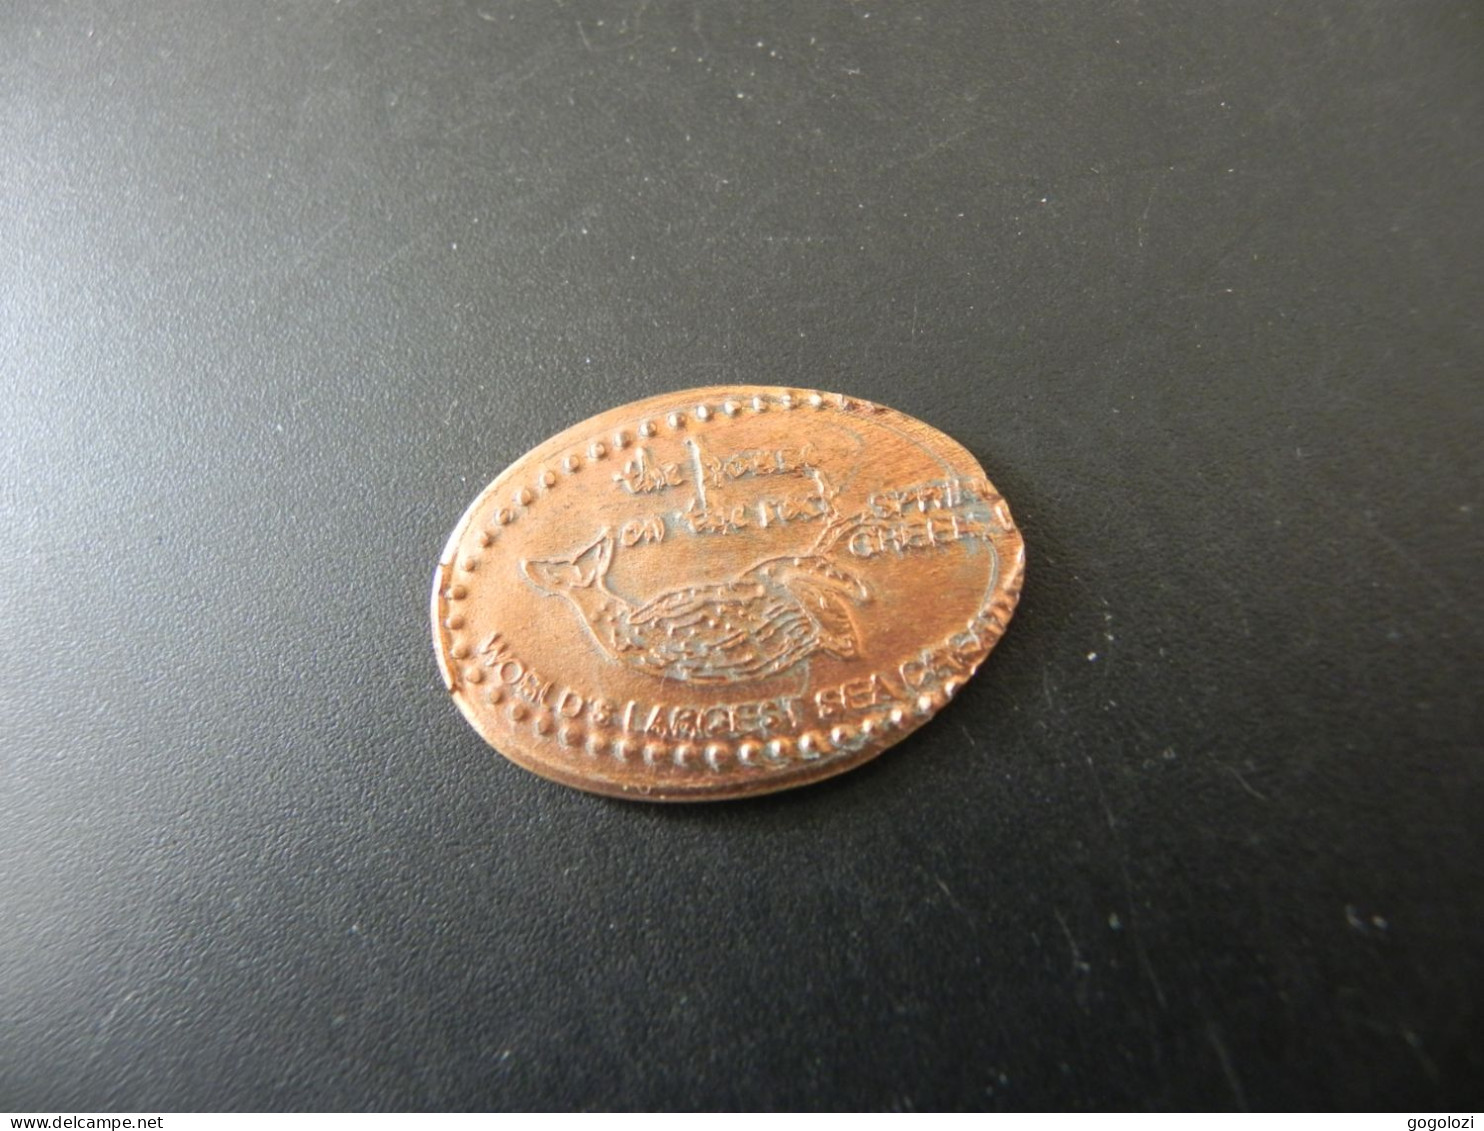 Jeton Token - Elongated Cent - USA - World's Largest Sea Park - Monedas Elongadas (elongated Coins)